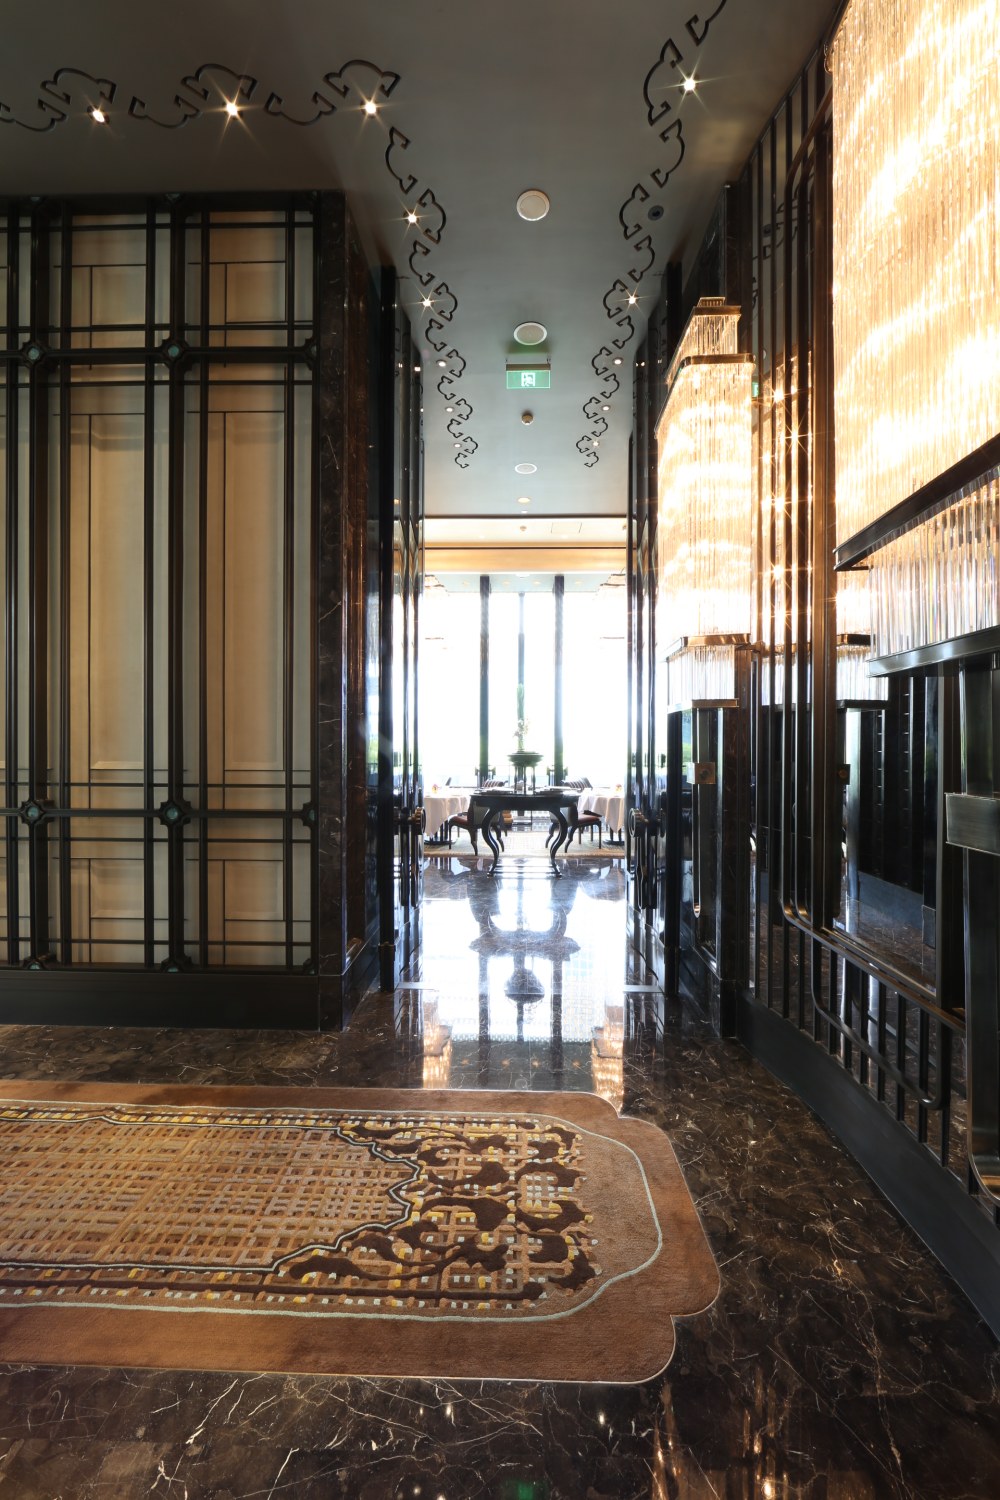 上海浦东四季酒店( Four Seasons Hotel Shanghai Pudong)_DI6A1378.JPG